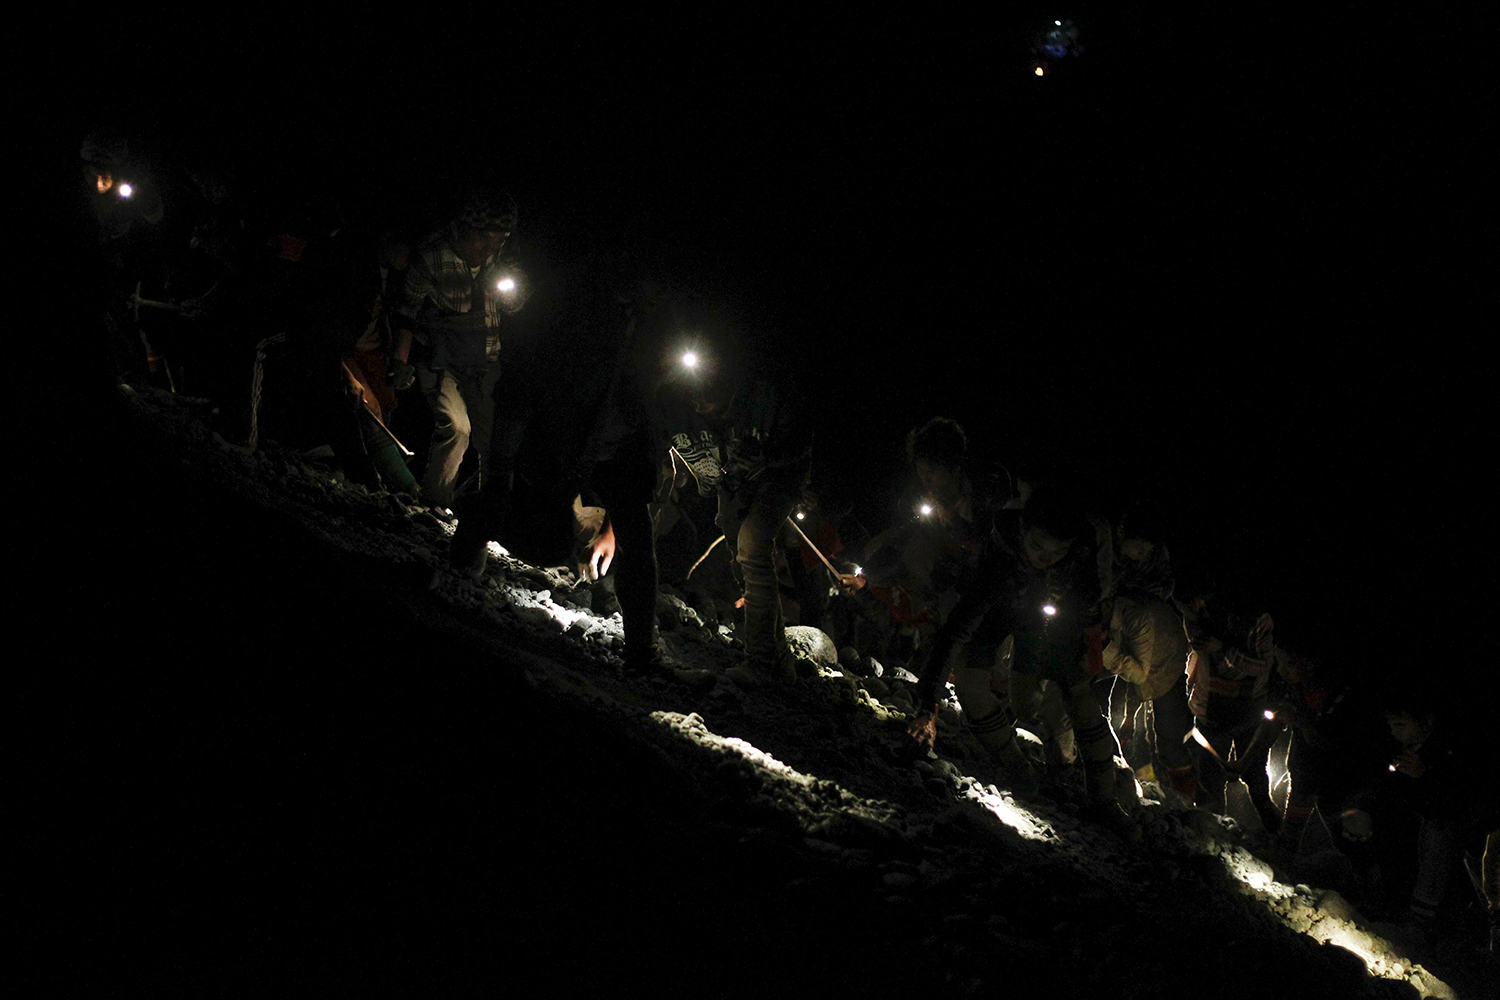 19 mineros atrapados en una mina de carbón en China